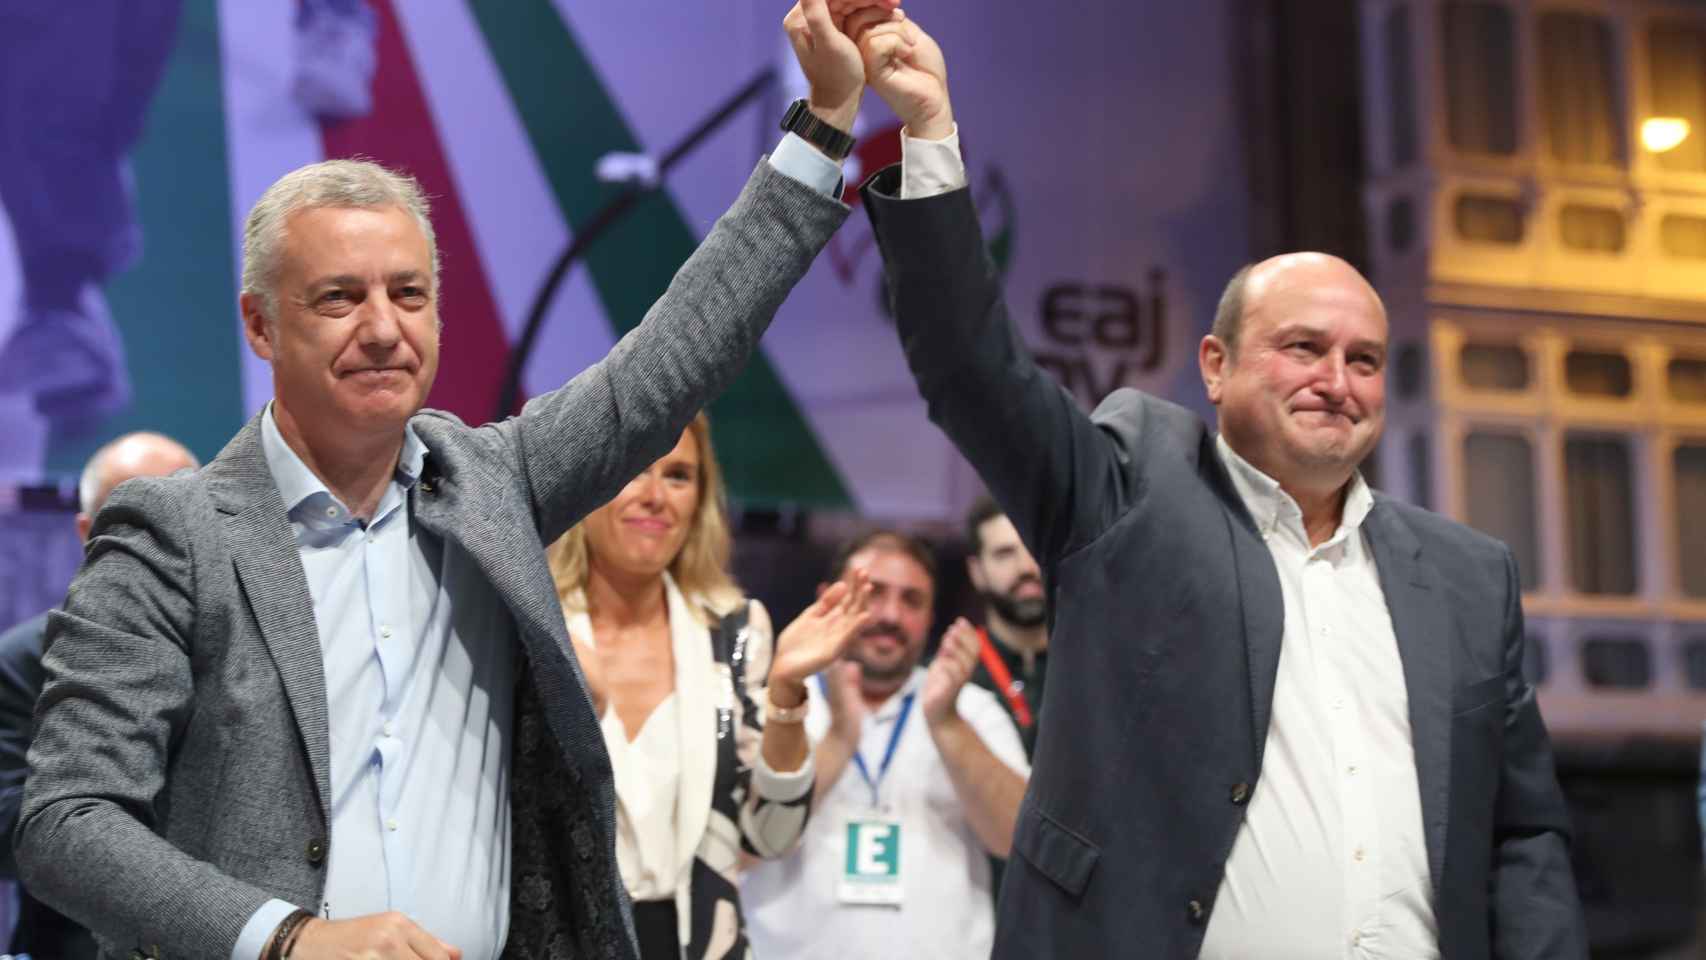 El lehendakari, Iñigo Urkullu, junto al presidente del PNV, Andoni Ortuzar, celebran los resultados electorales en Bilbao.